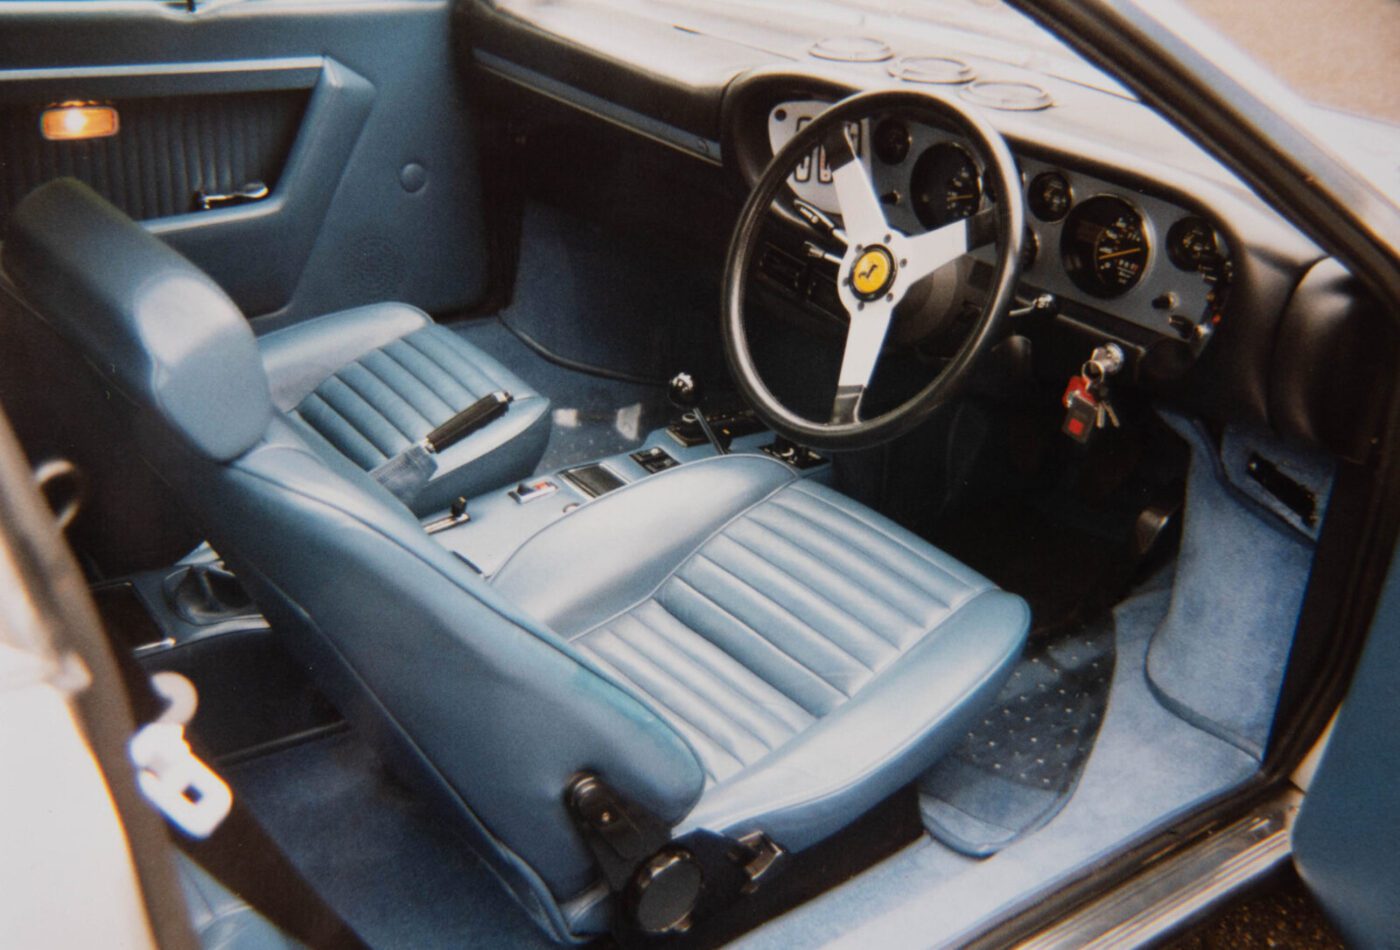 Ferrari 308GT4 interior